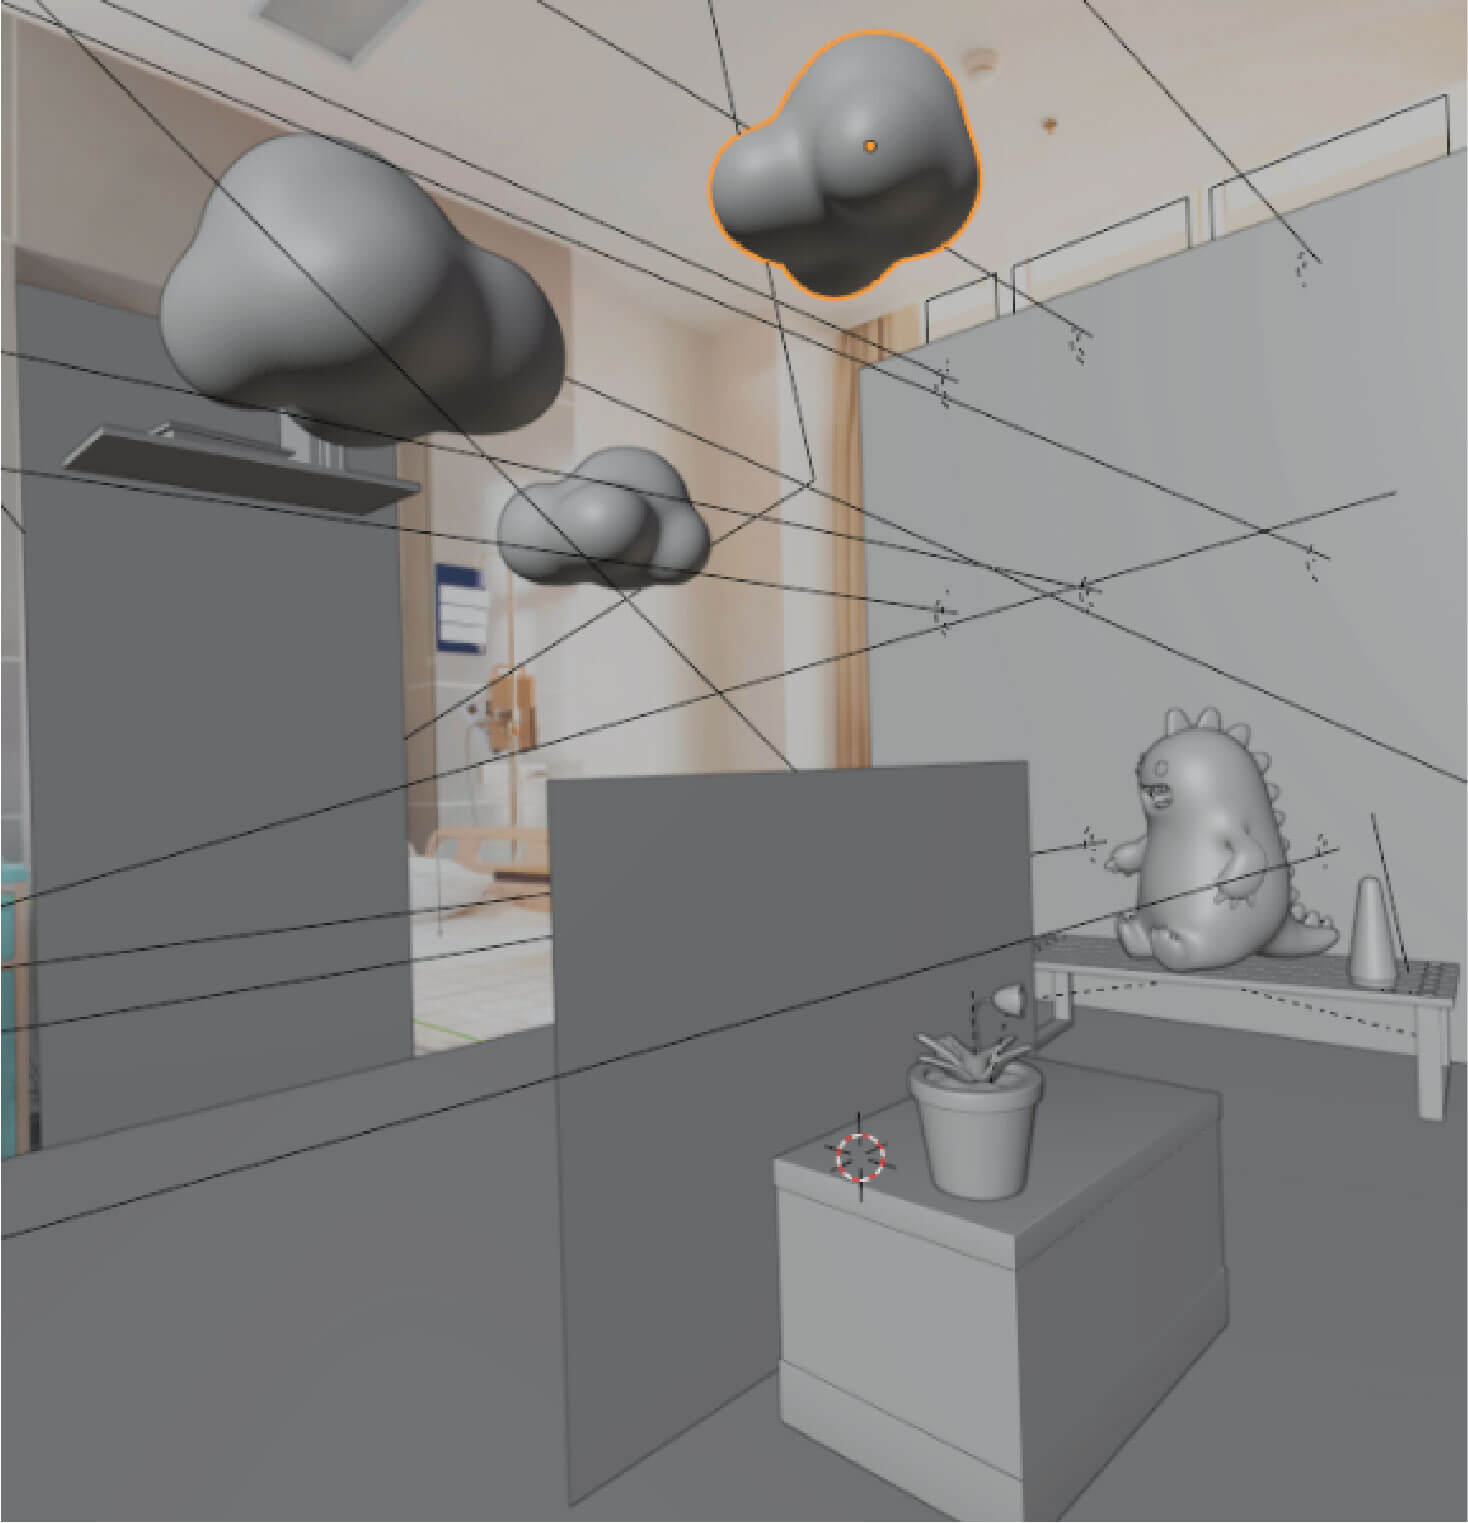 Scene setup in Blender 3D to align with hospital room image